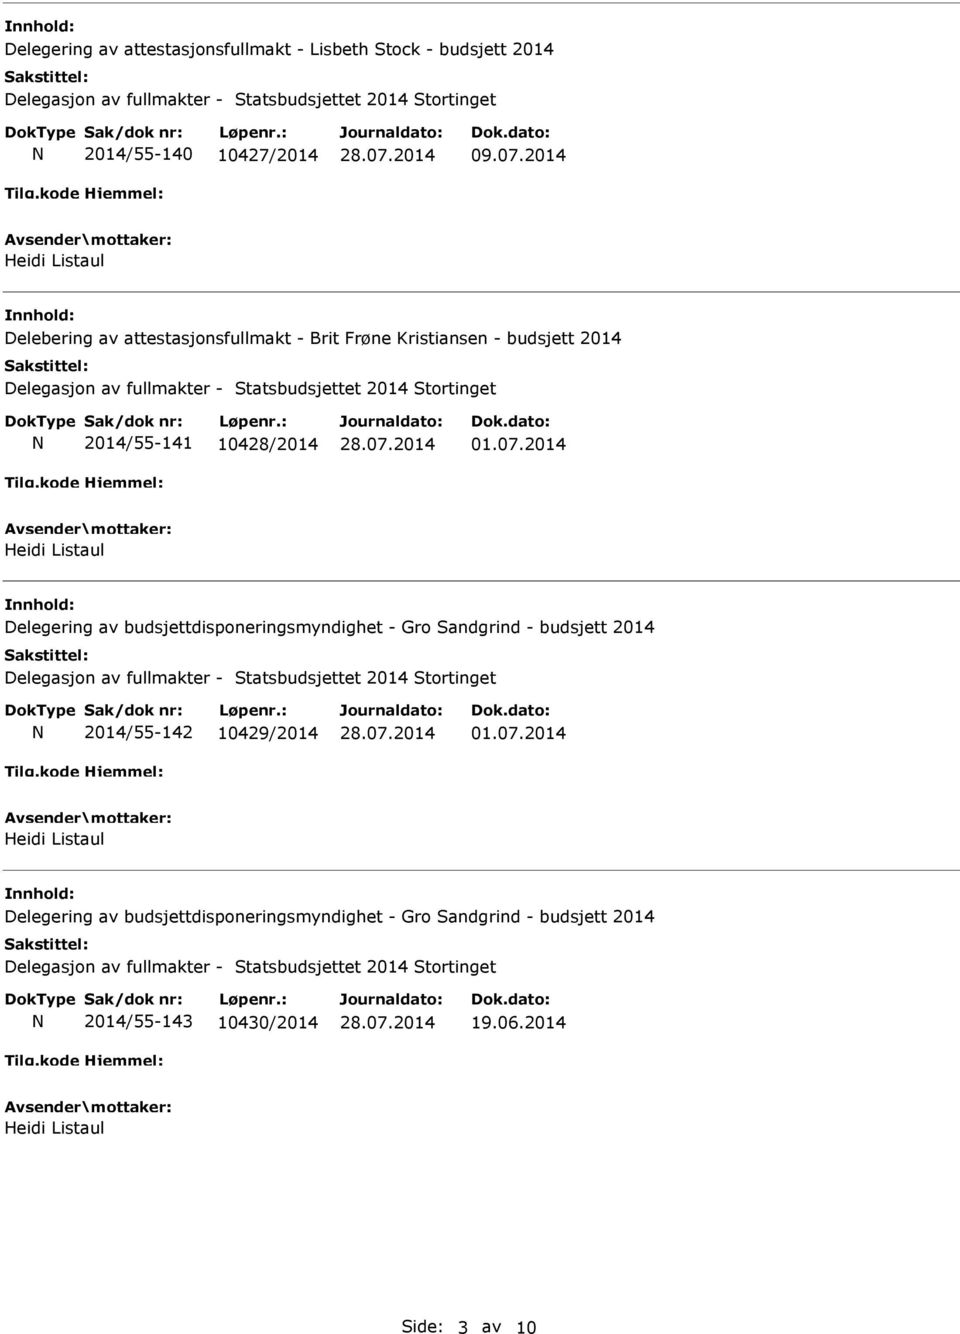 2014 Delegering av budsjettdisponeringsmyndighet - Gro Sandgrind - budsjett 2014 2014/55-142 10429/2014 01.07.